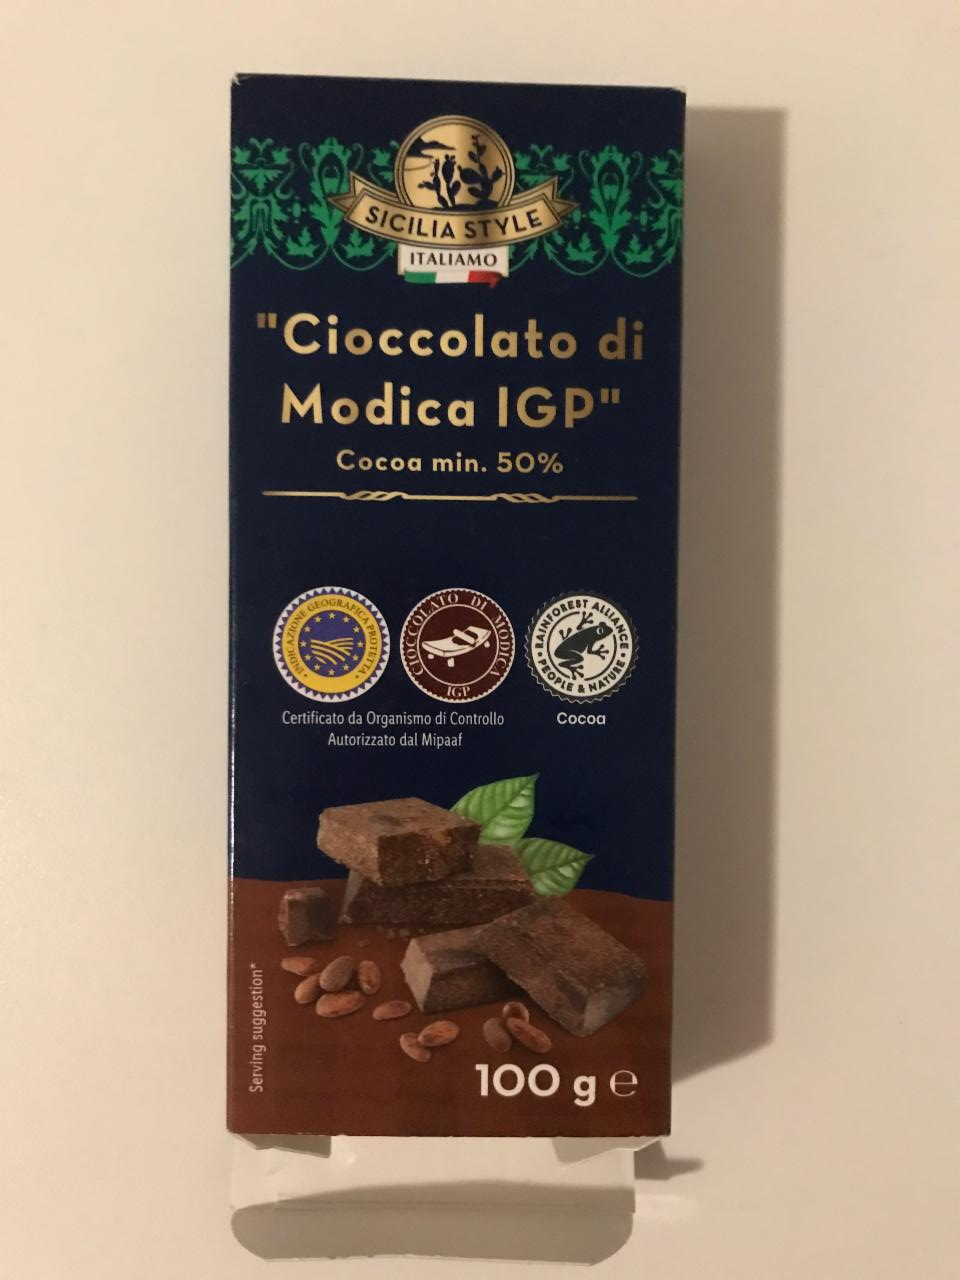 Fotografie - Italiamo Cioccolato di Modica IGP 50% cocoa